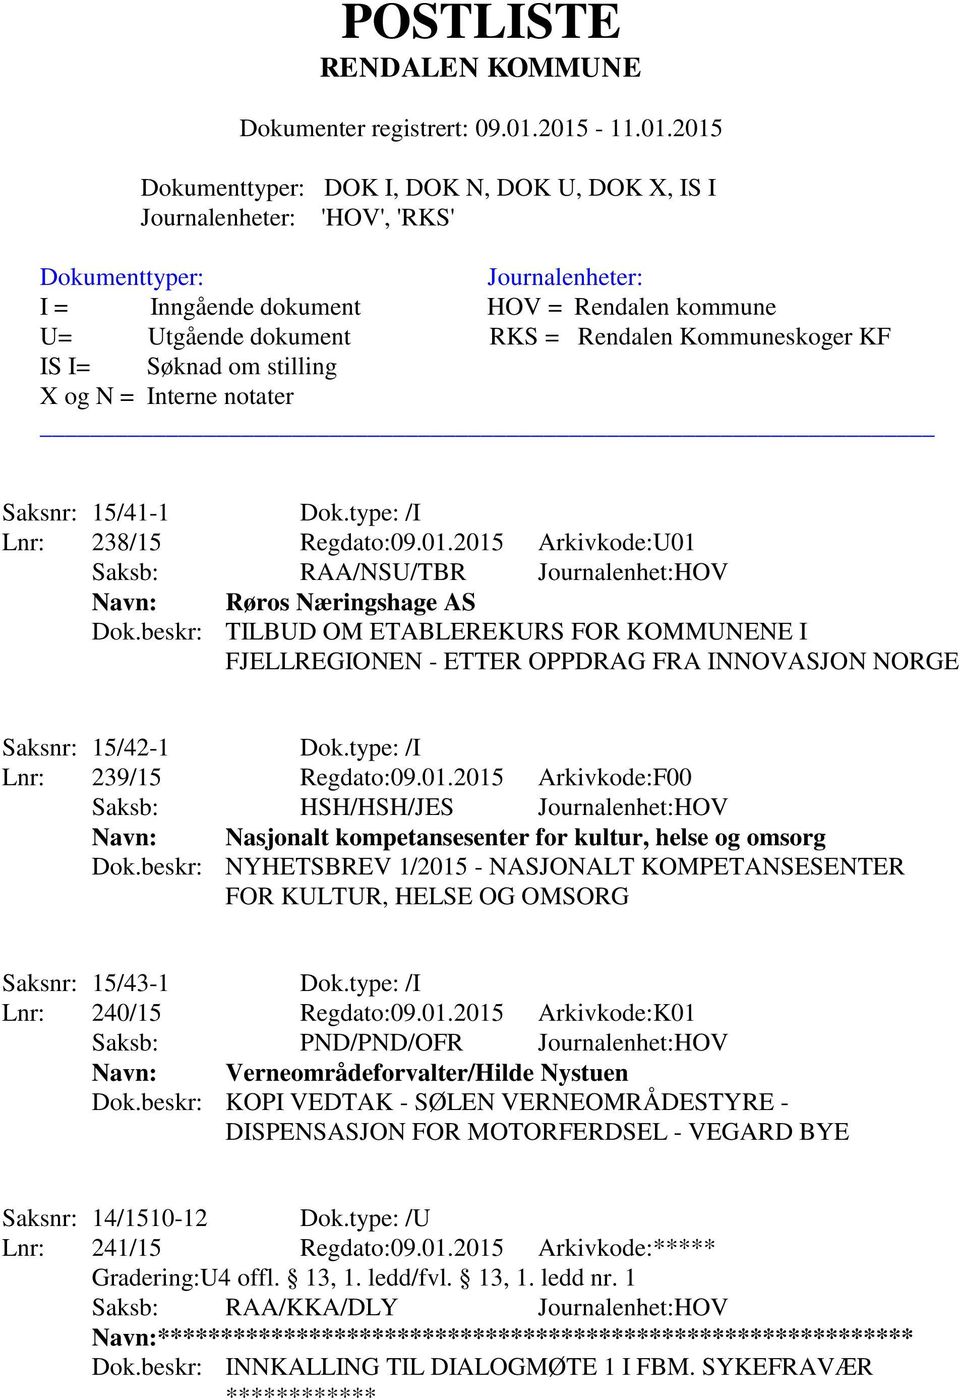 2015 Arkivkode:F00 Saksb: HSH/HSH/JES Journalenhet:HOV Navn: Nasjonalt kompetansesenter for kultur, helse og omsorg Dok.